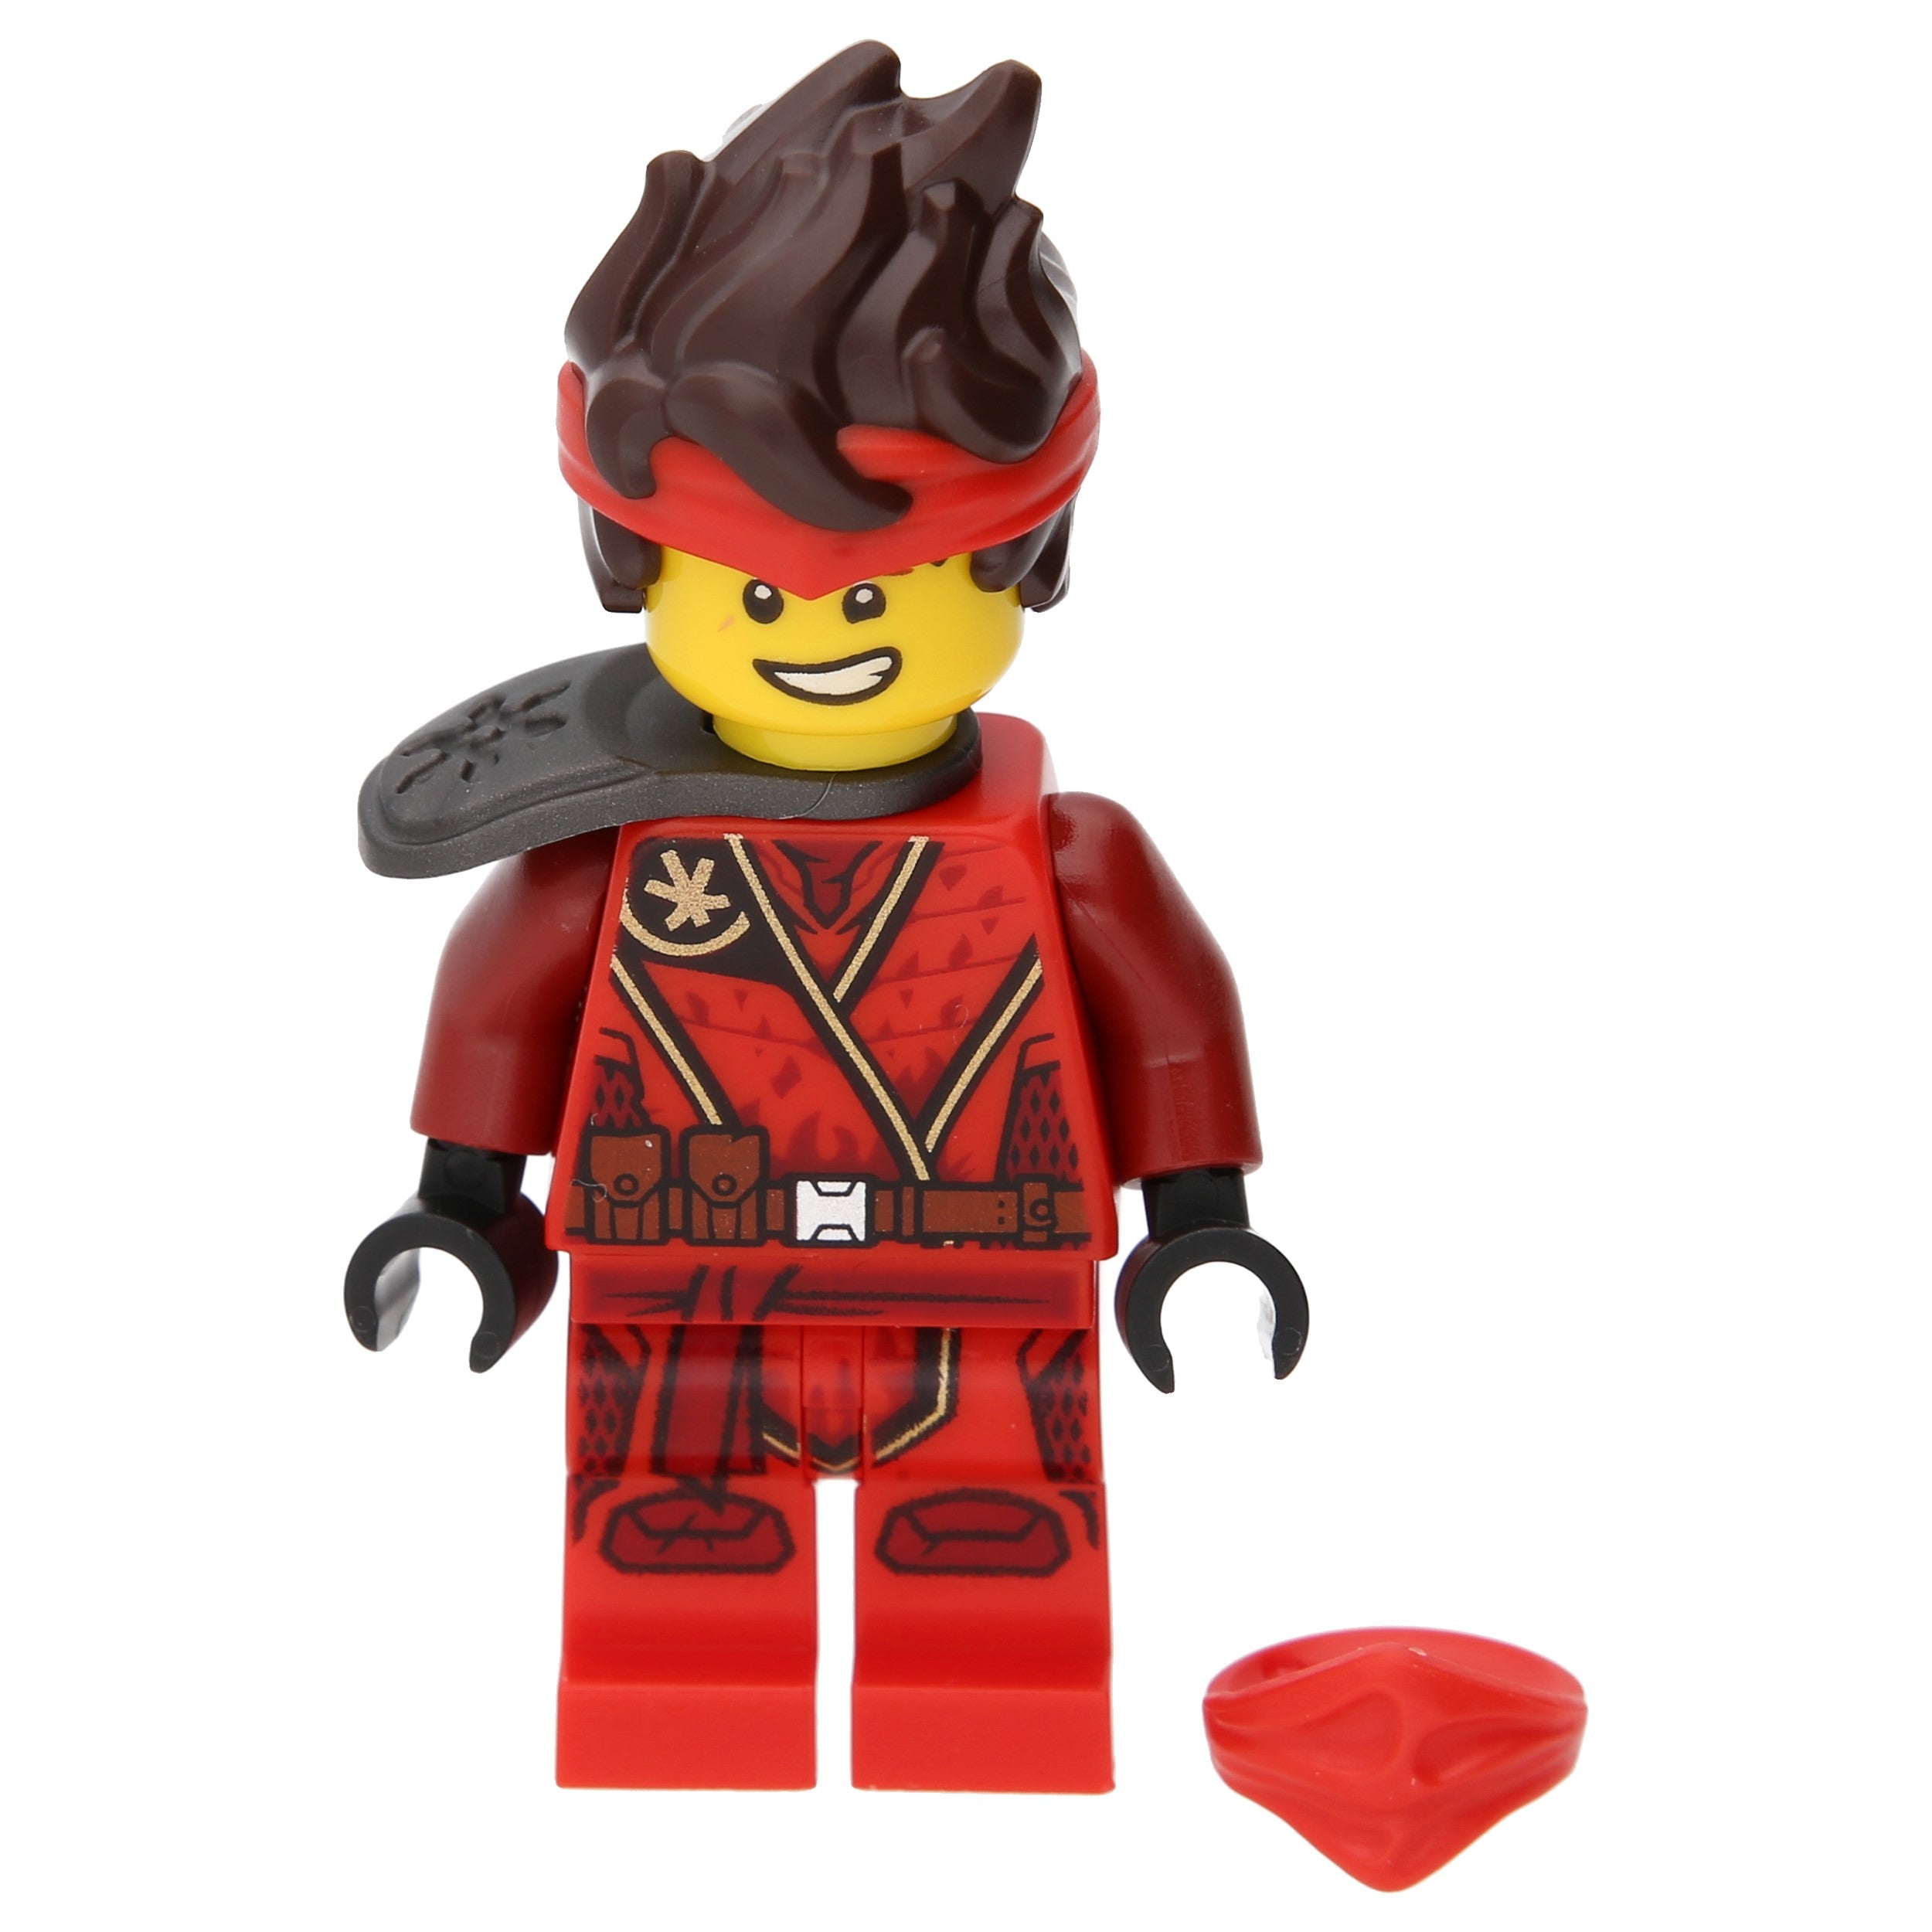 LEGO Ninjago Minifigur – Kai mit Schulterplatte, Haaren und Maske (Geheimnis der Tiefe)